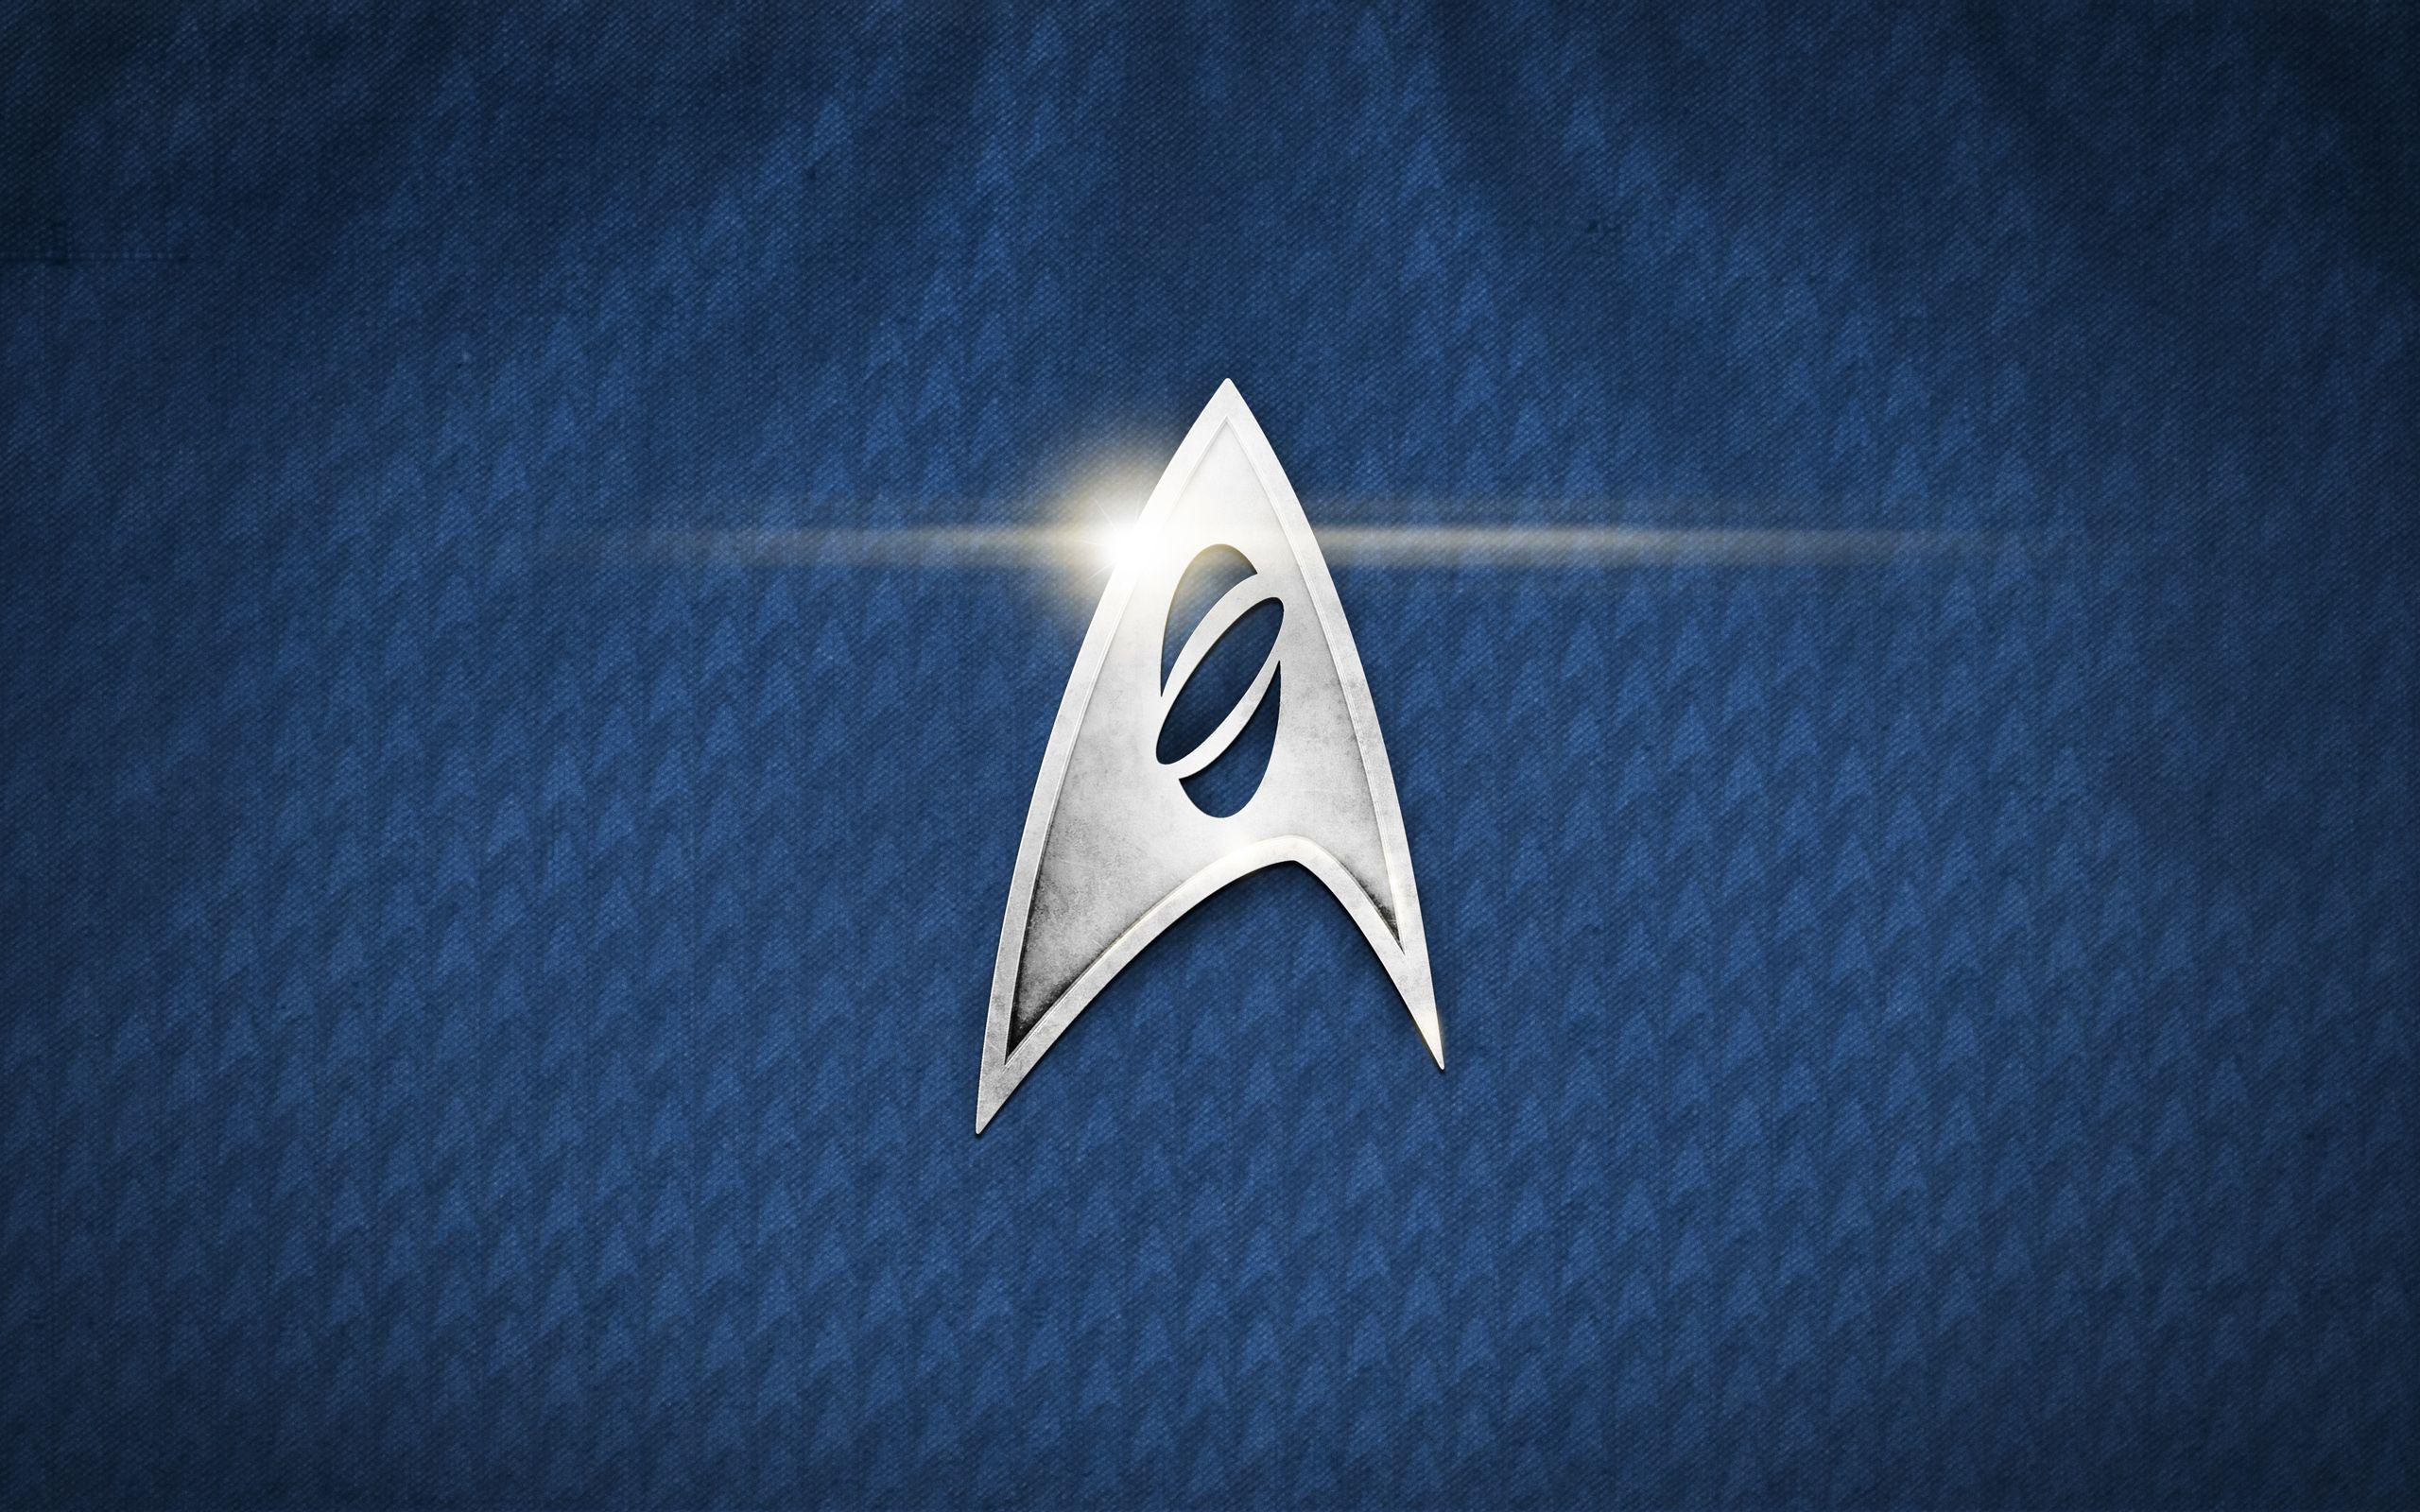 Minimalist Star Trek Wallpapers Top Free Minimalist Star Trek Backgrounds WallpaperAccess